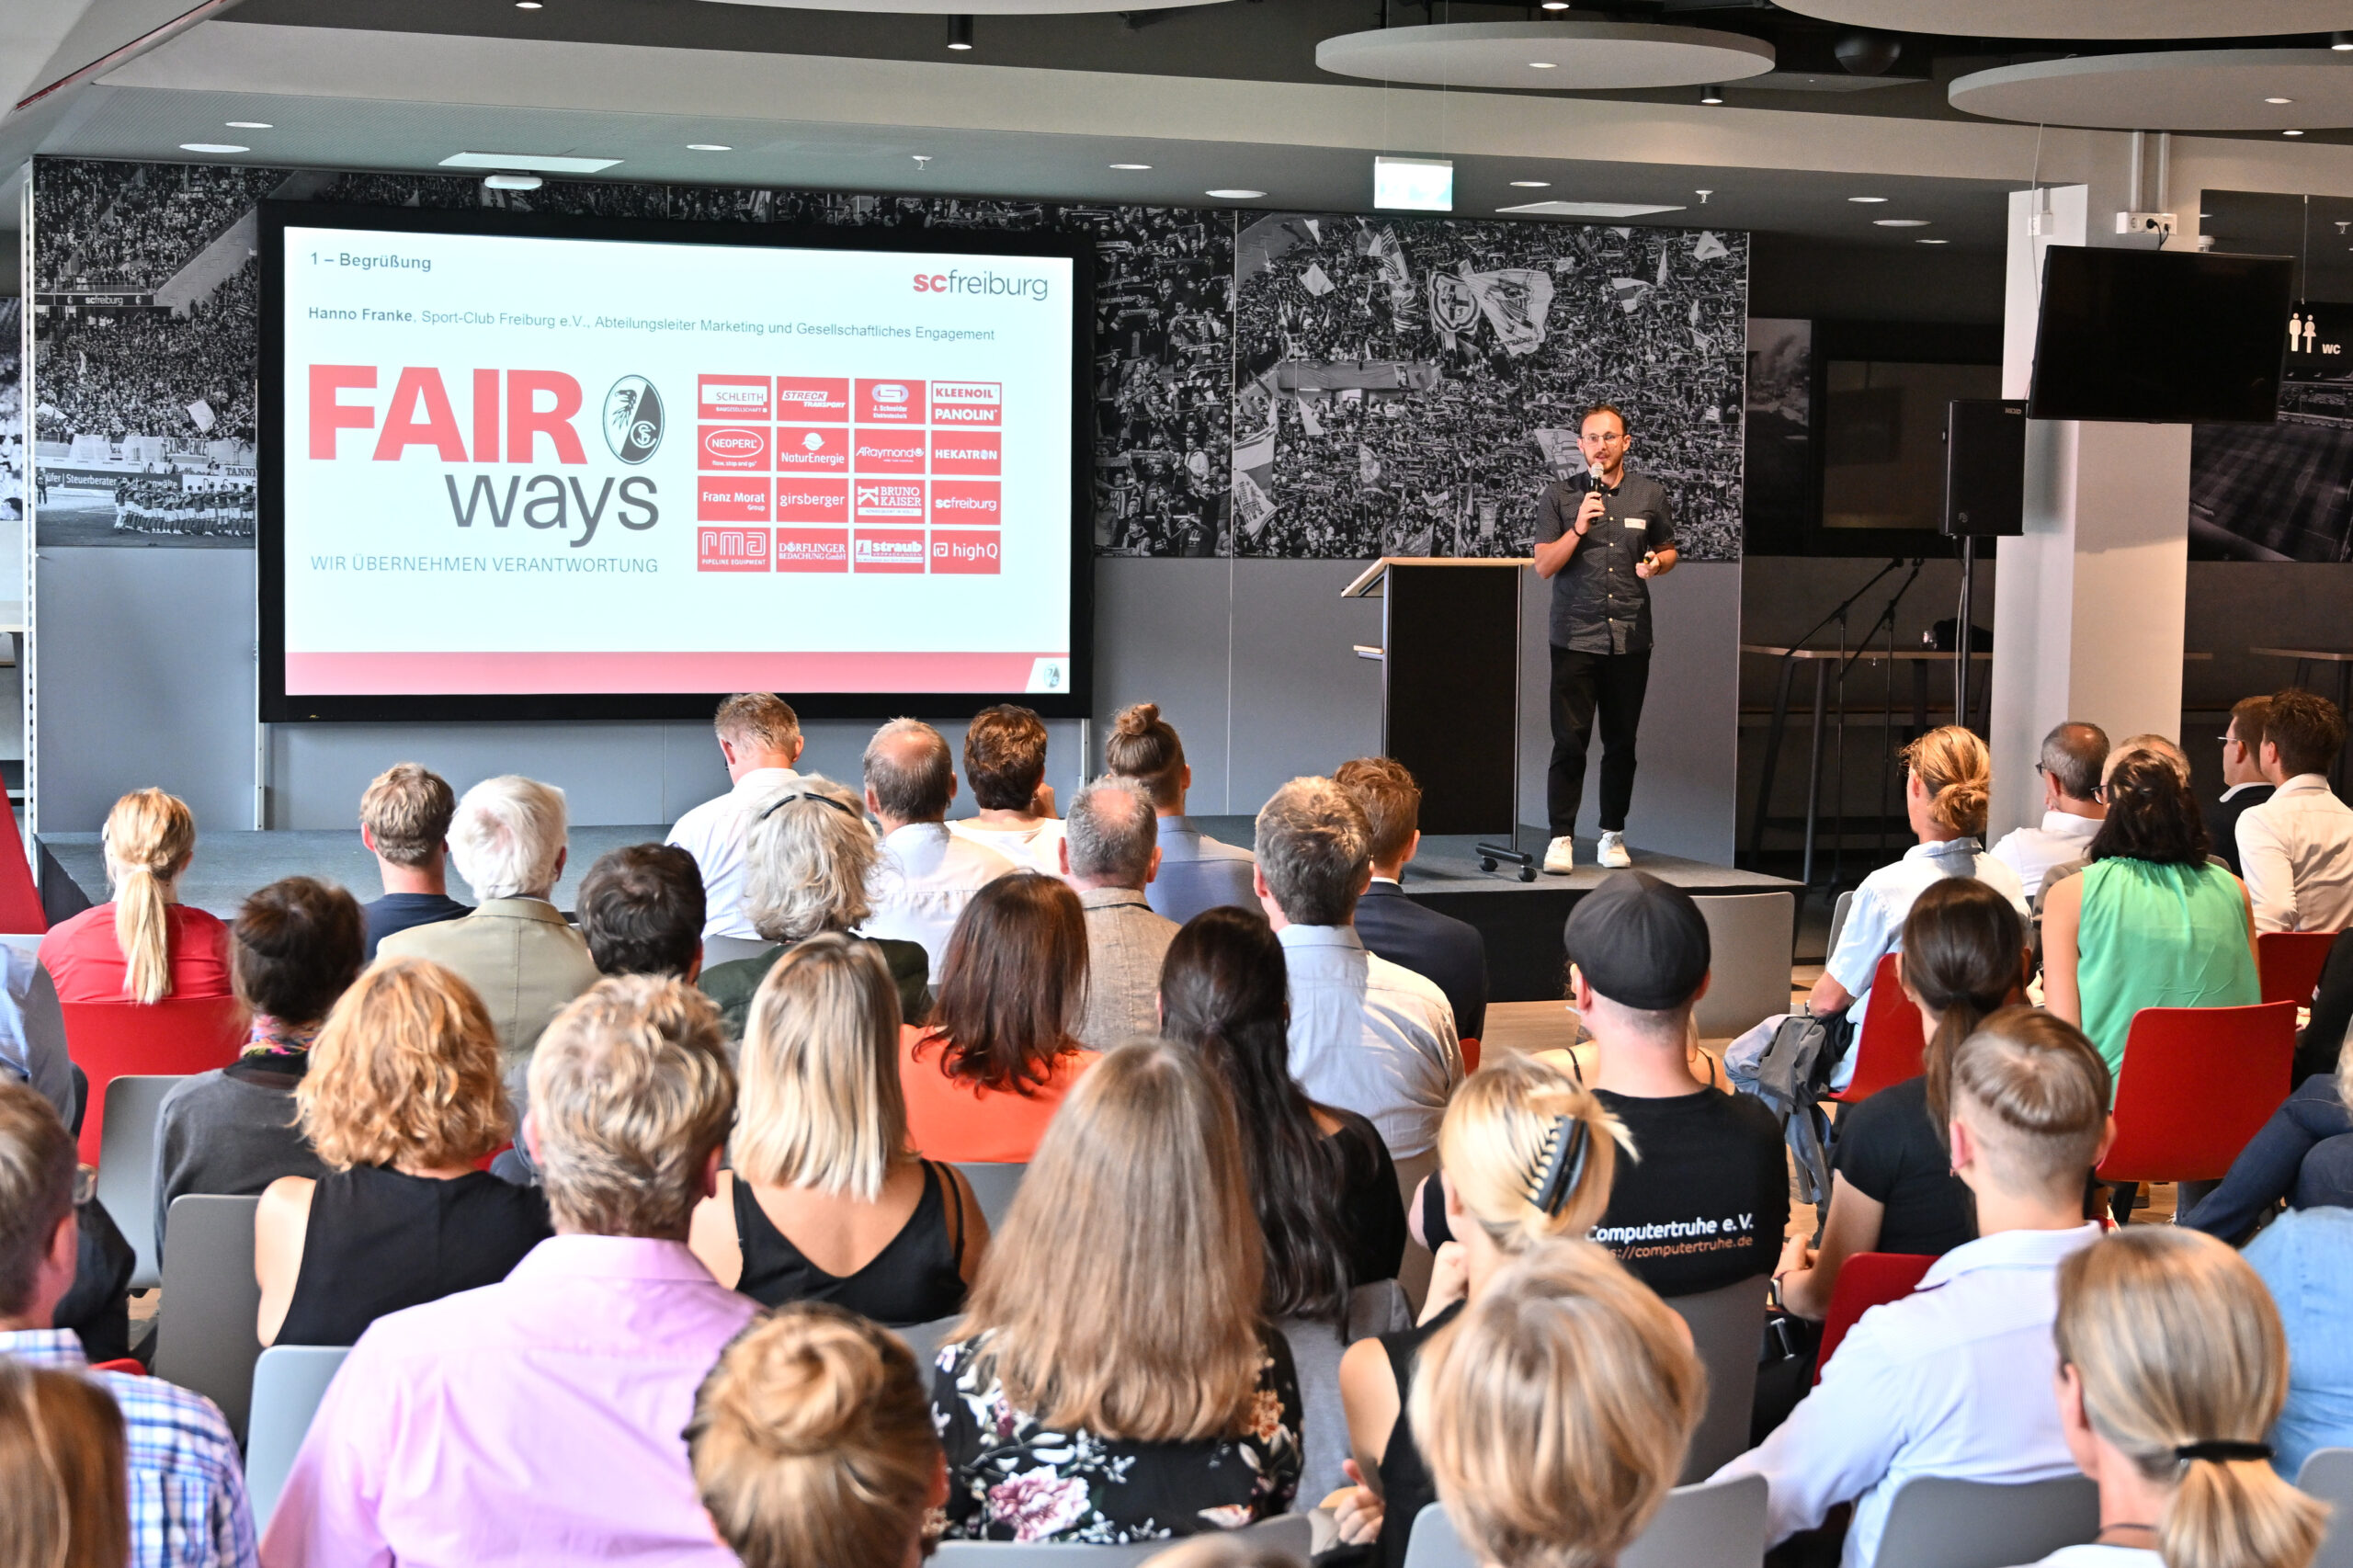 Tobias Rauber steht mit einem Mikrofon auf der Bühne. Neben ihm werden auf einer Leinwand die Logos der „FAIR ways“-Partner angezeigt. Im Vordergrund sieht man einen Teil des Publikums sitzen.